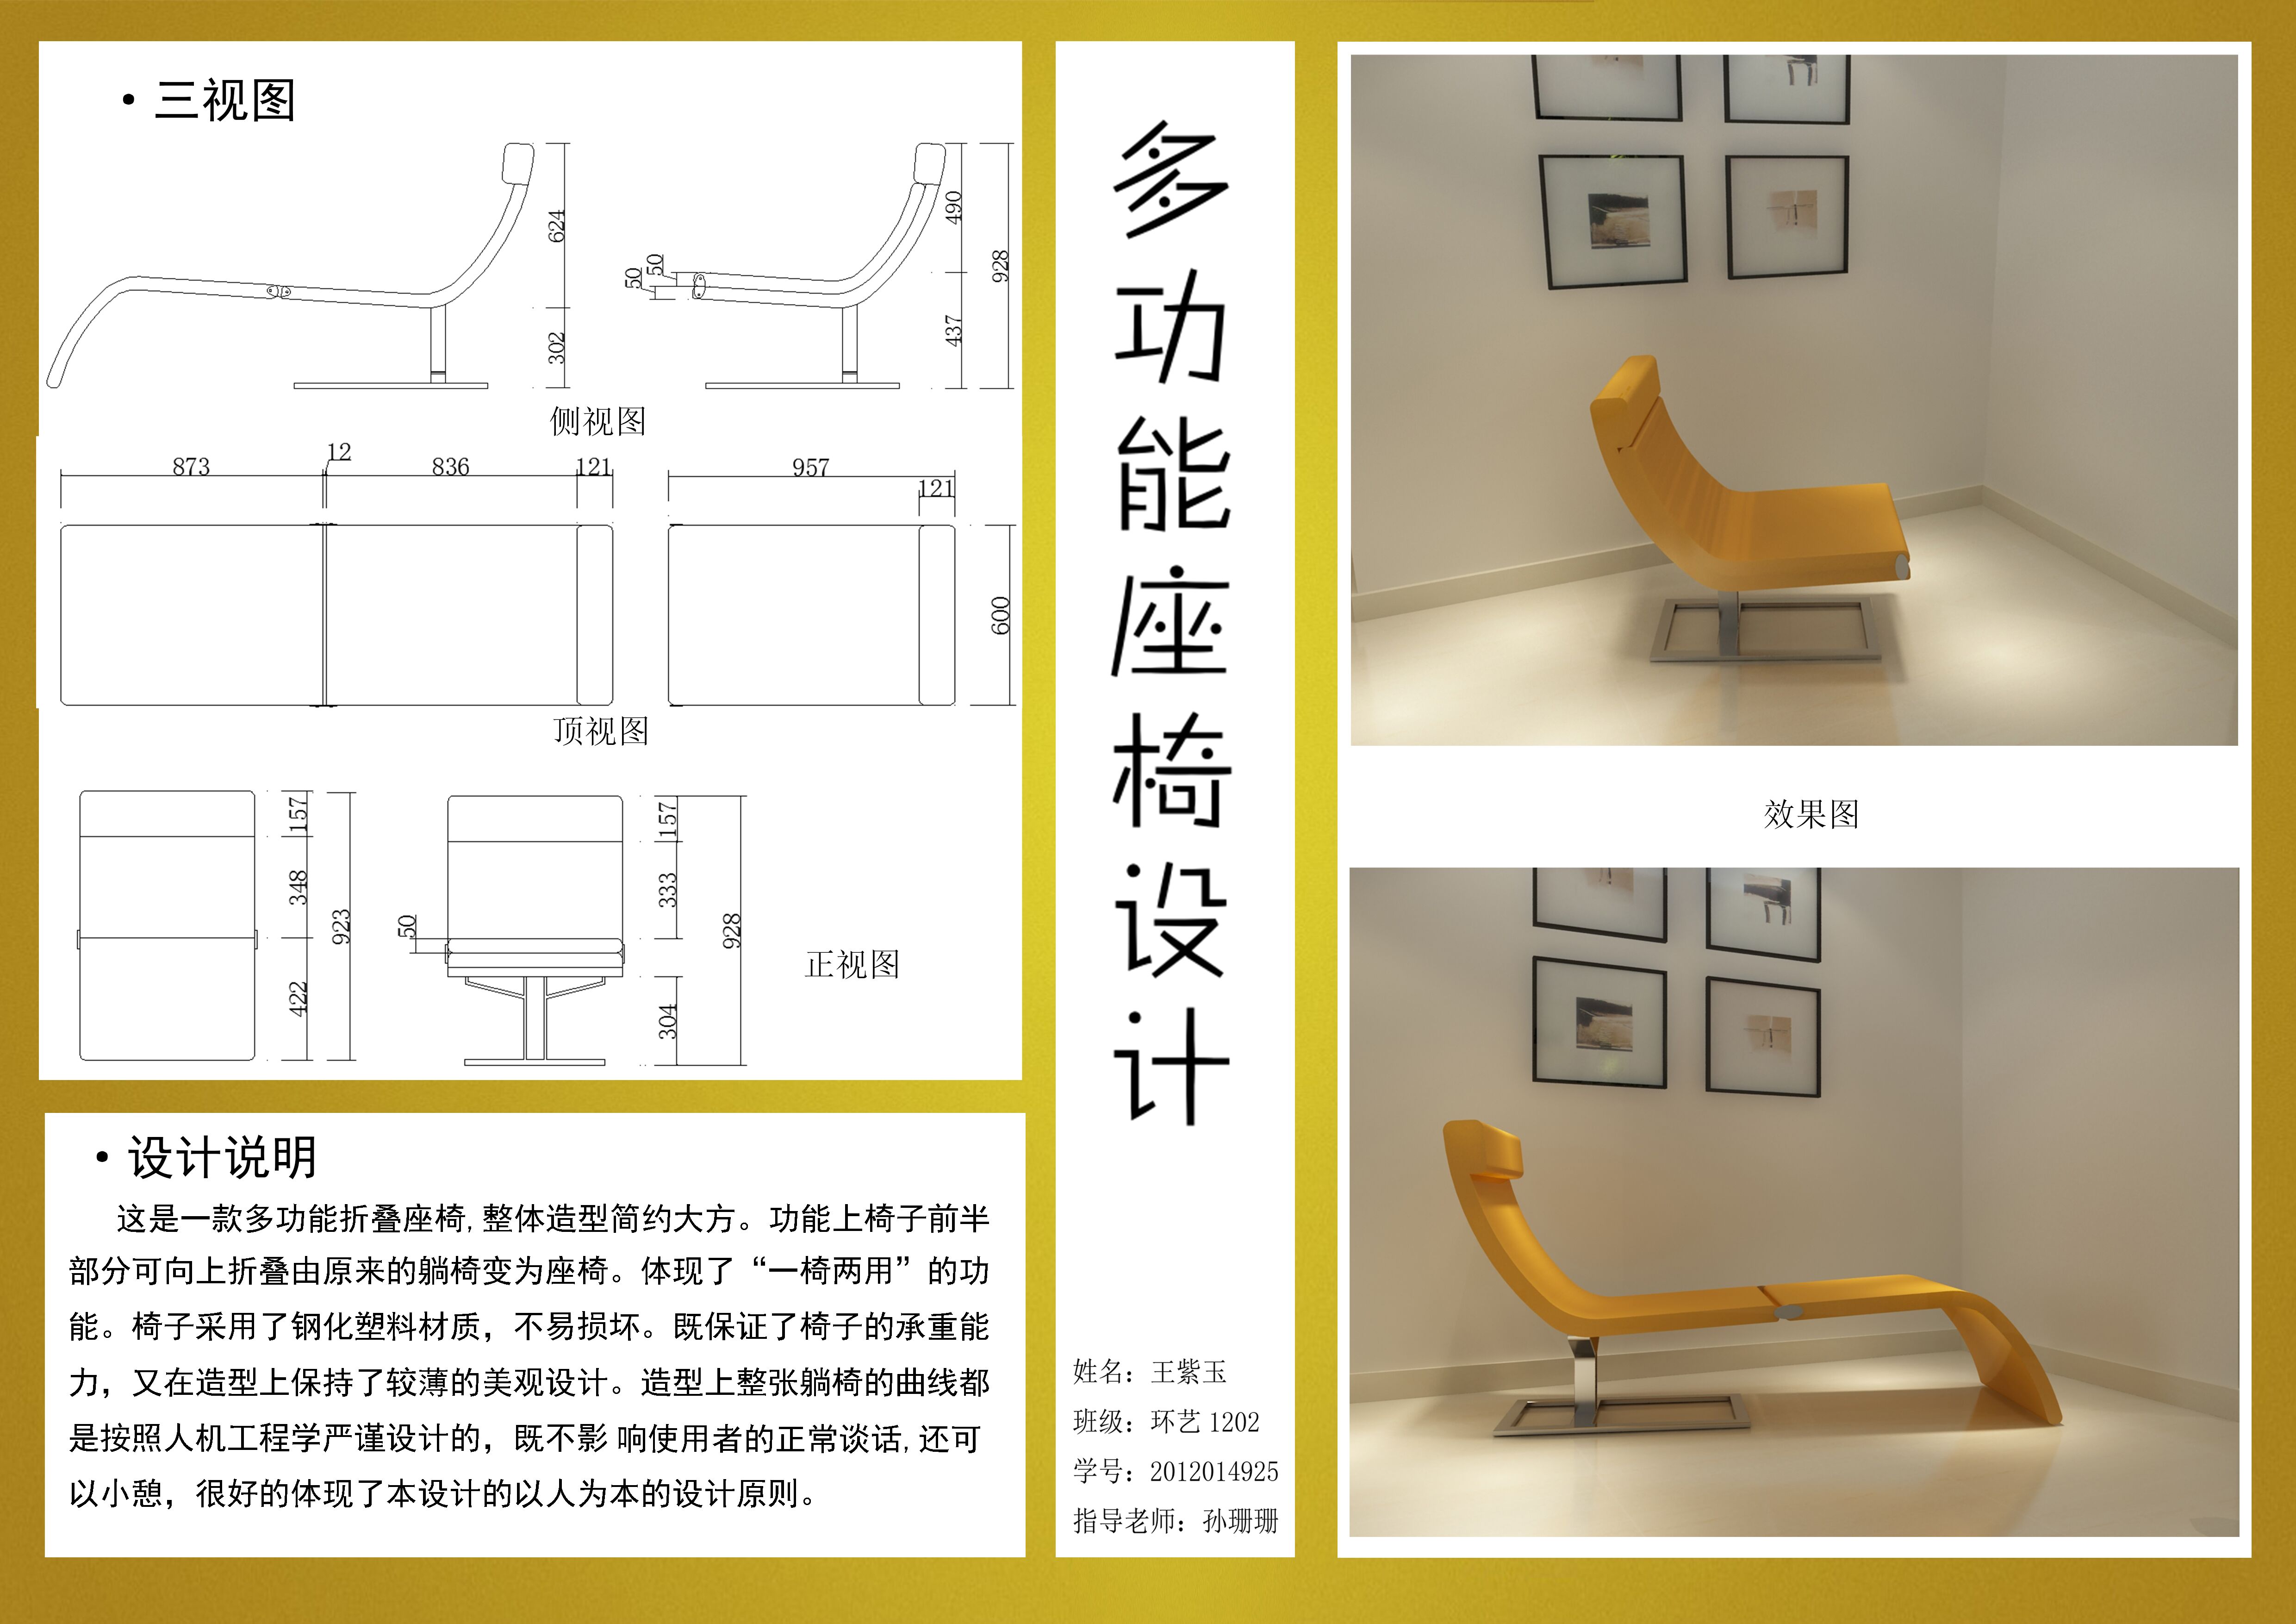 椅子的创新设计方案图片